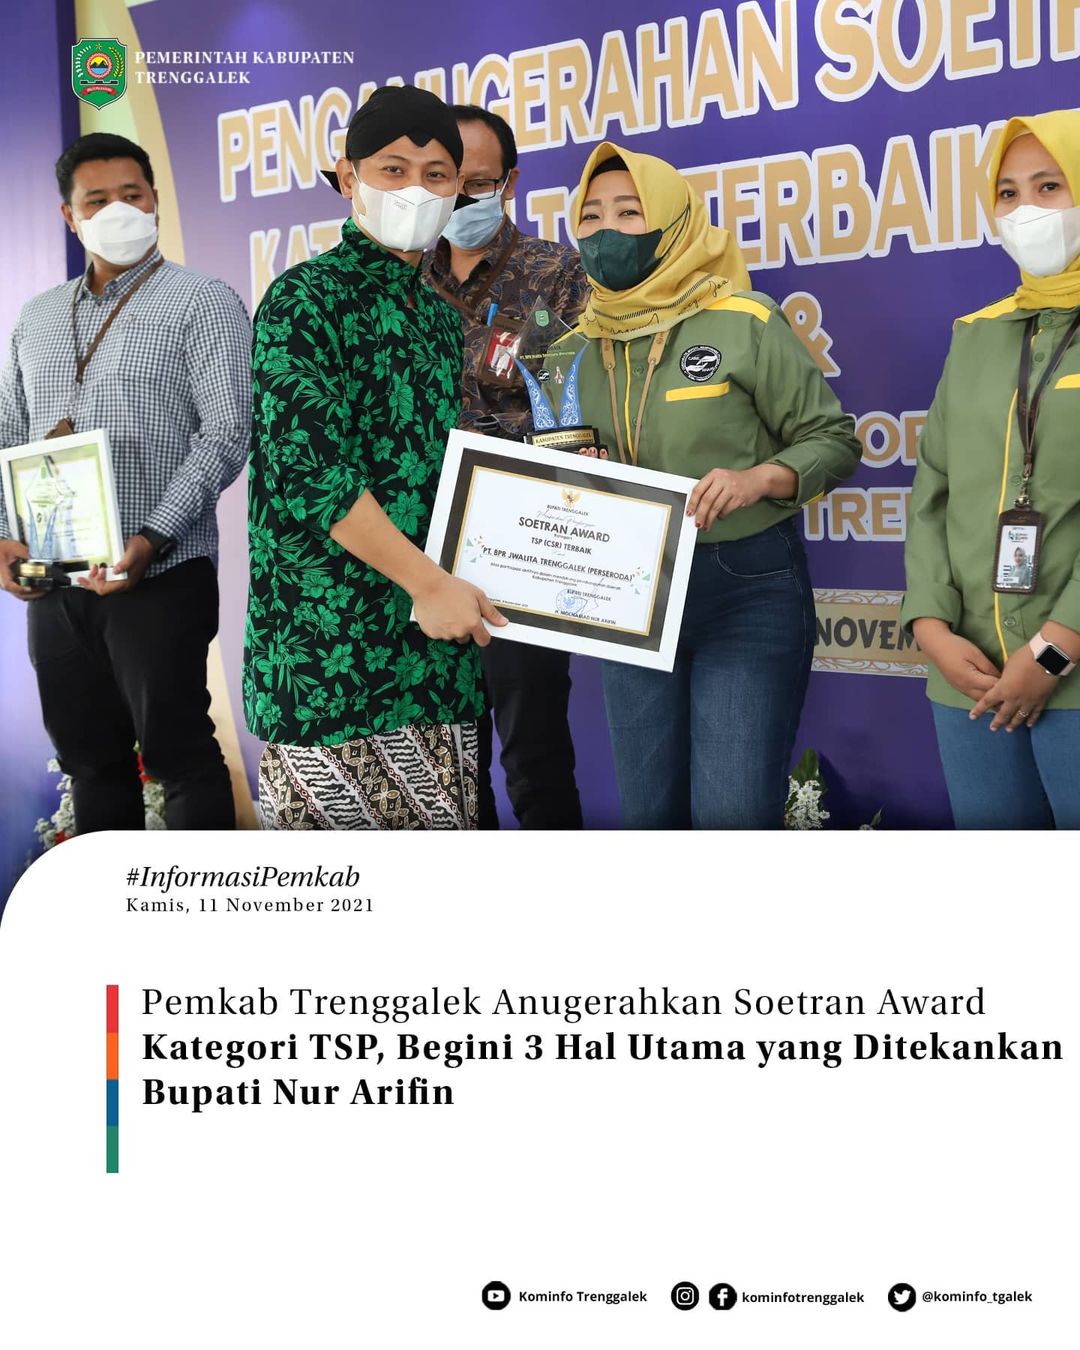 Pemkab Trenggalek Anugerahkan Soetran Award Karegori TSP, Begini 3 Hal Utama Yang di Tekankan bupati Nur Arifin